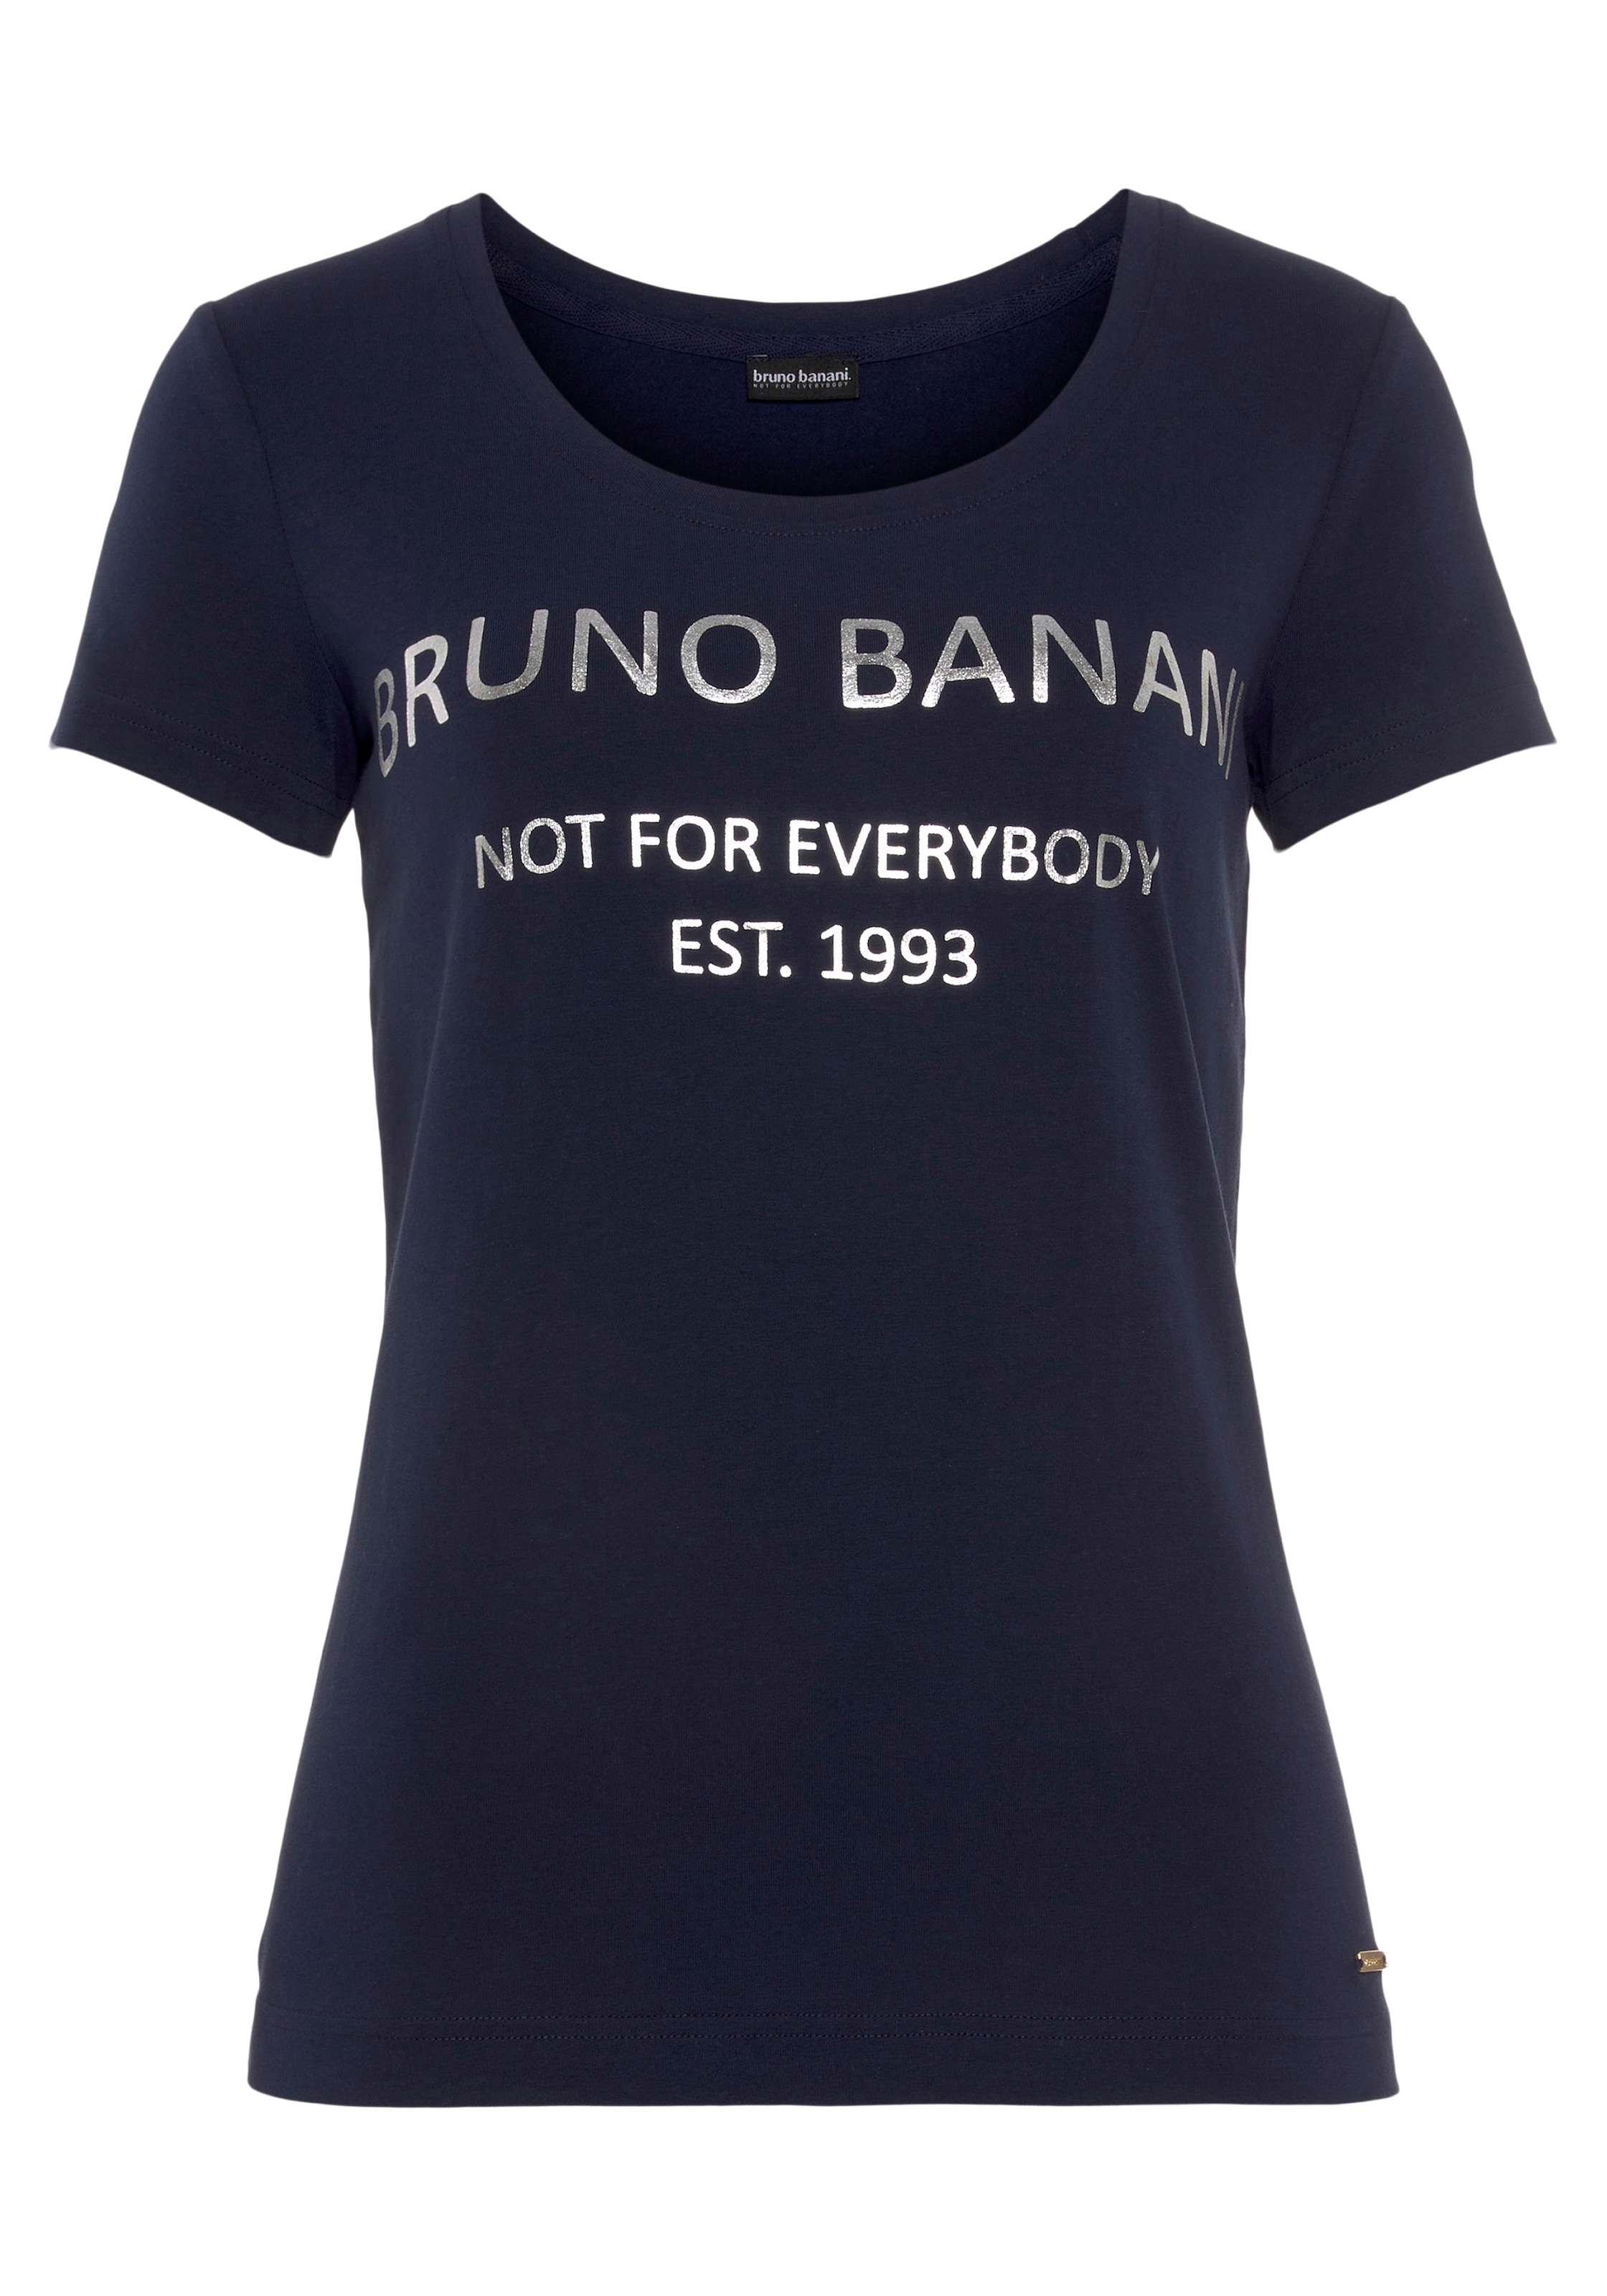 Bruno Banani T-Shirt, Logodruck NEUE ♕ mit KOLLEKTION goldfarbenem bei